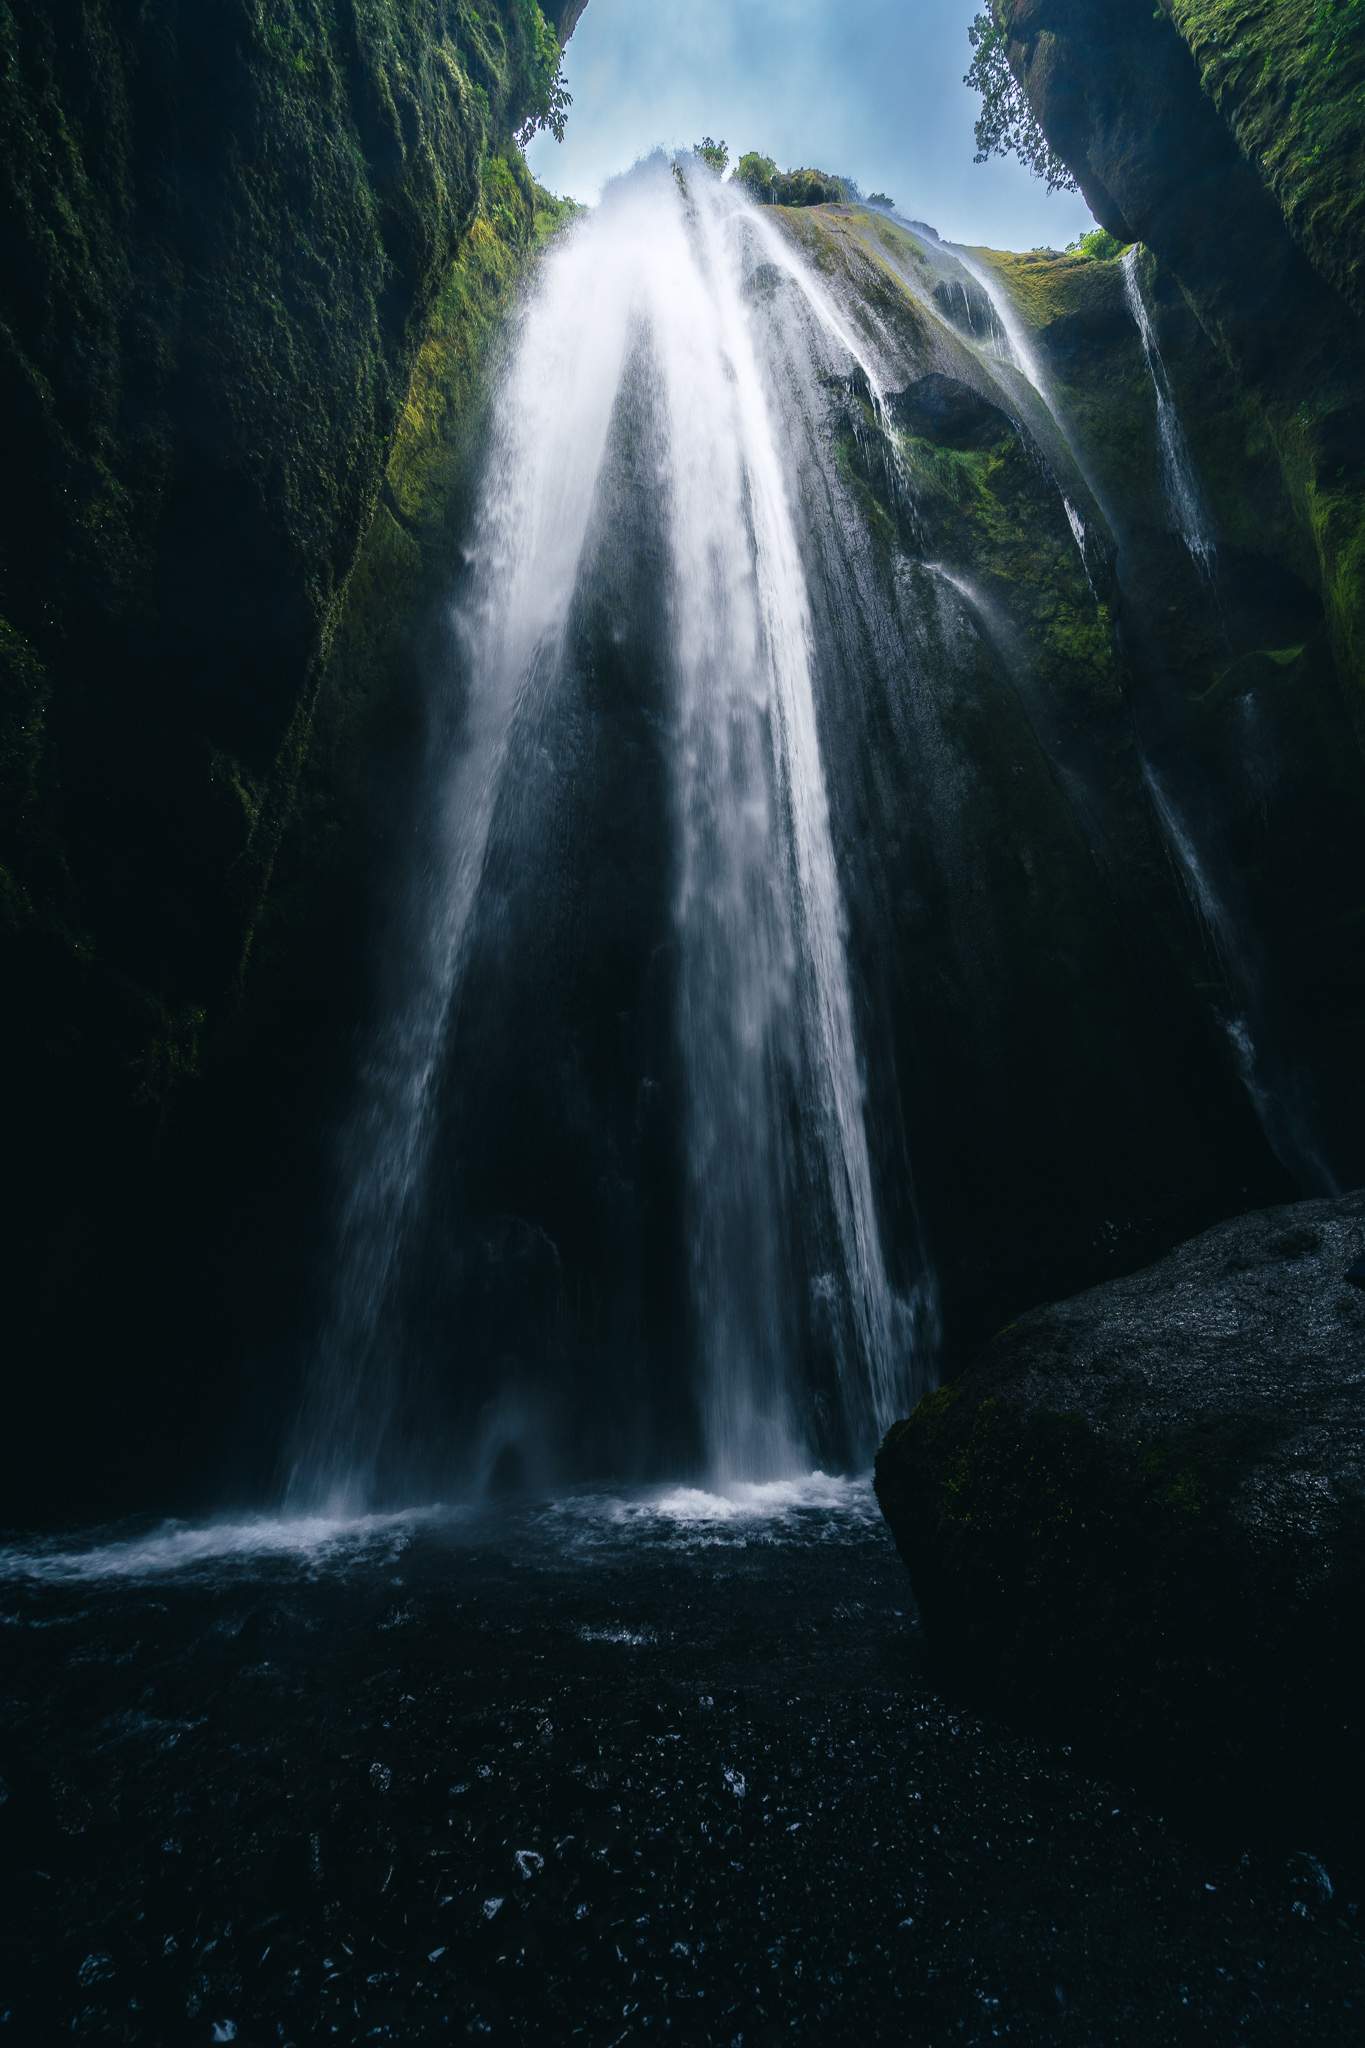 A view of hidden Gljúfrabúi waterfall, Iceland